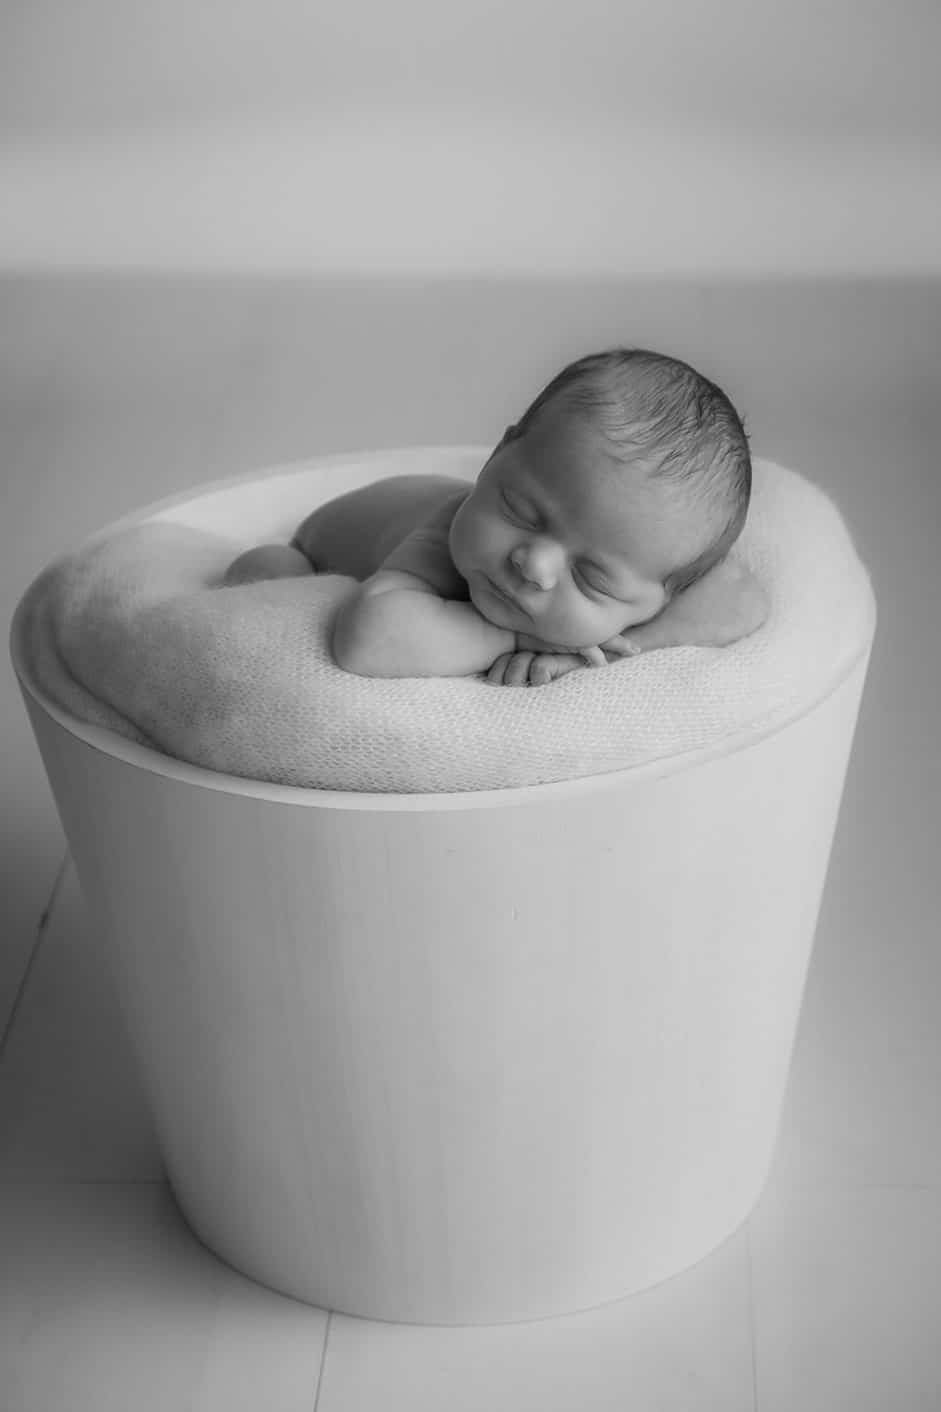 Home or studio newborn photo session. 2